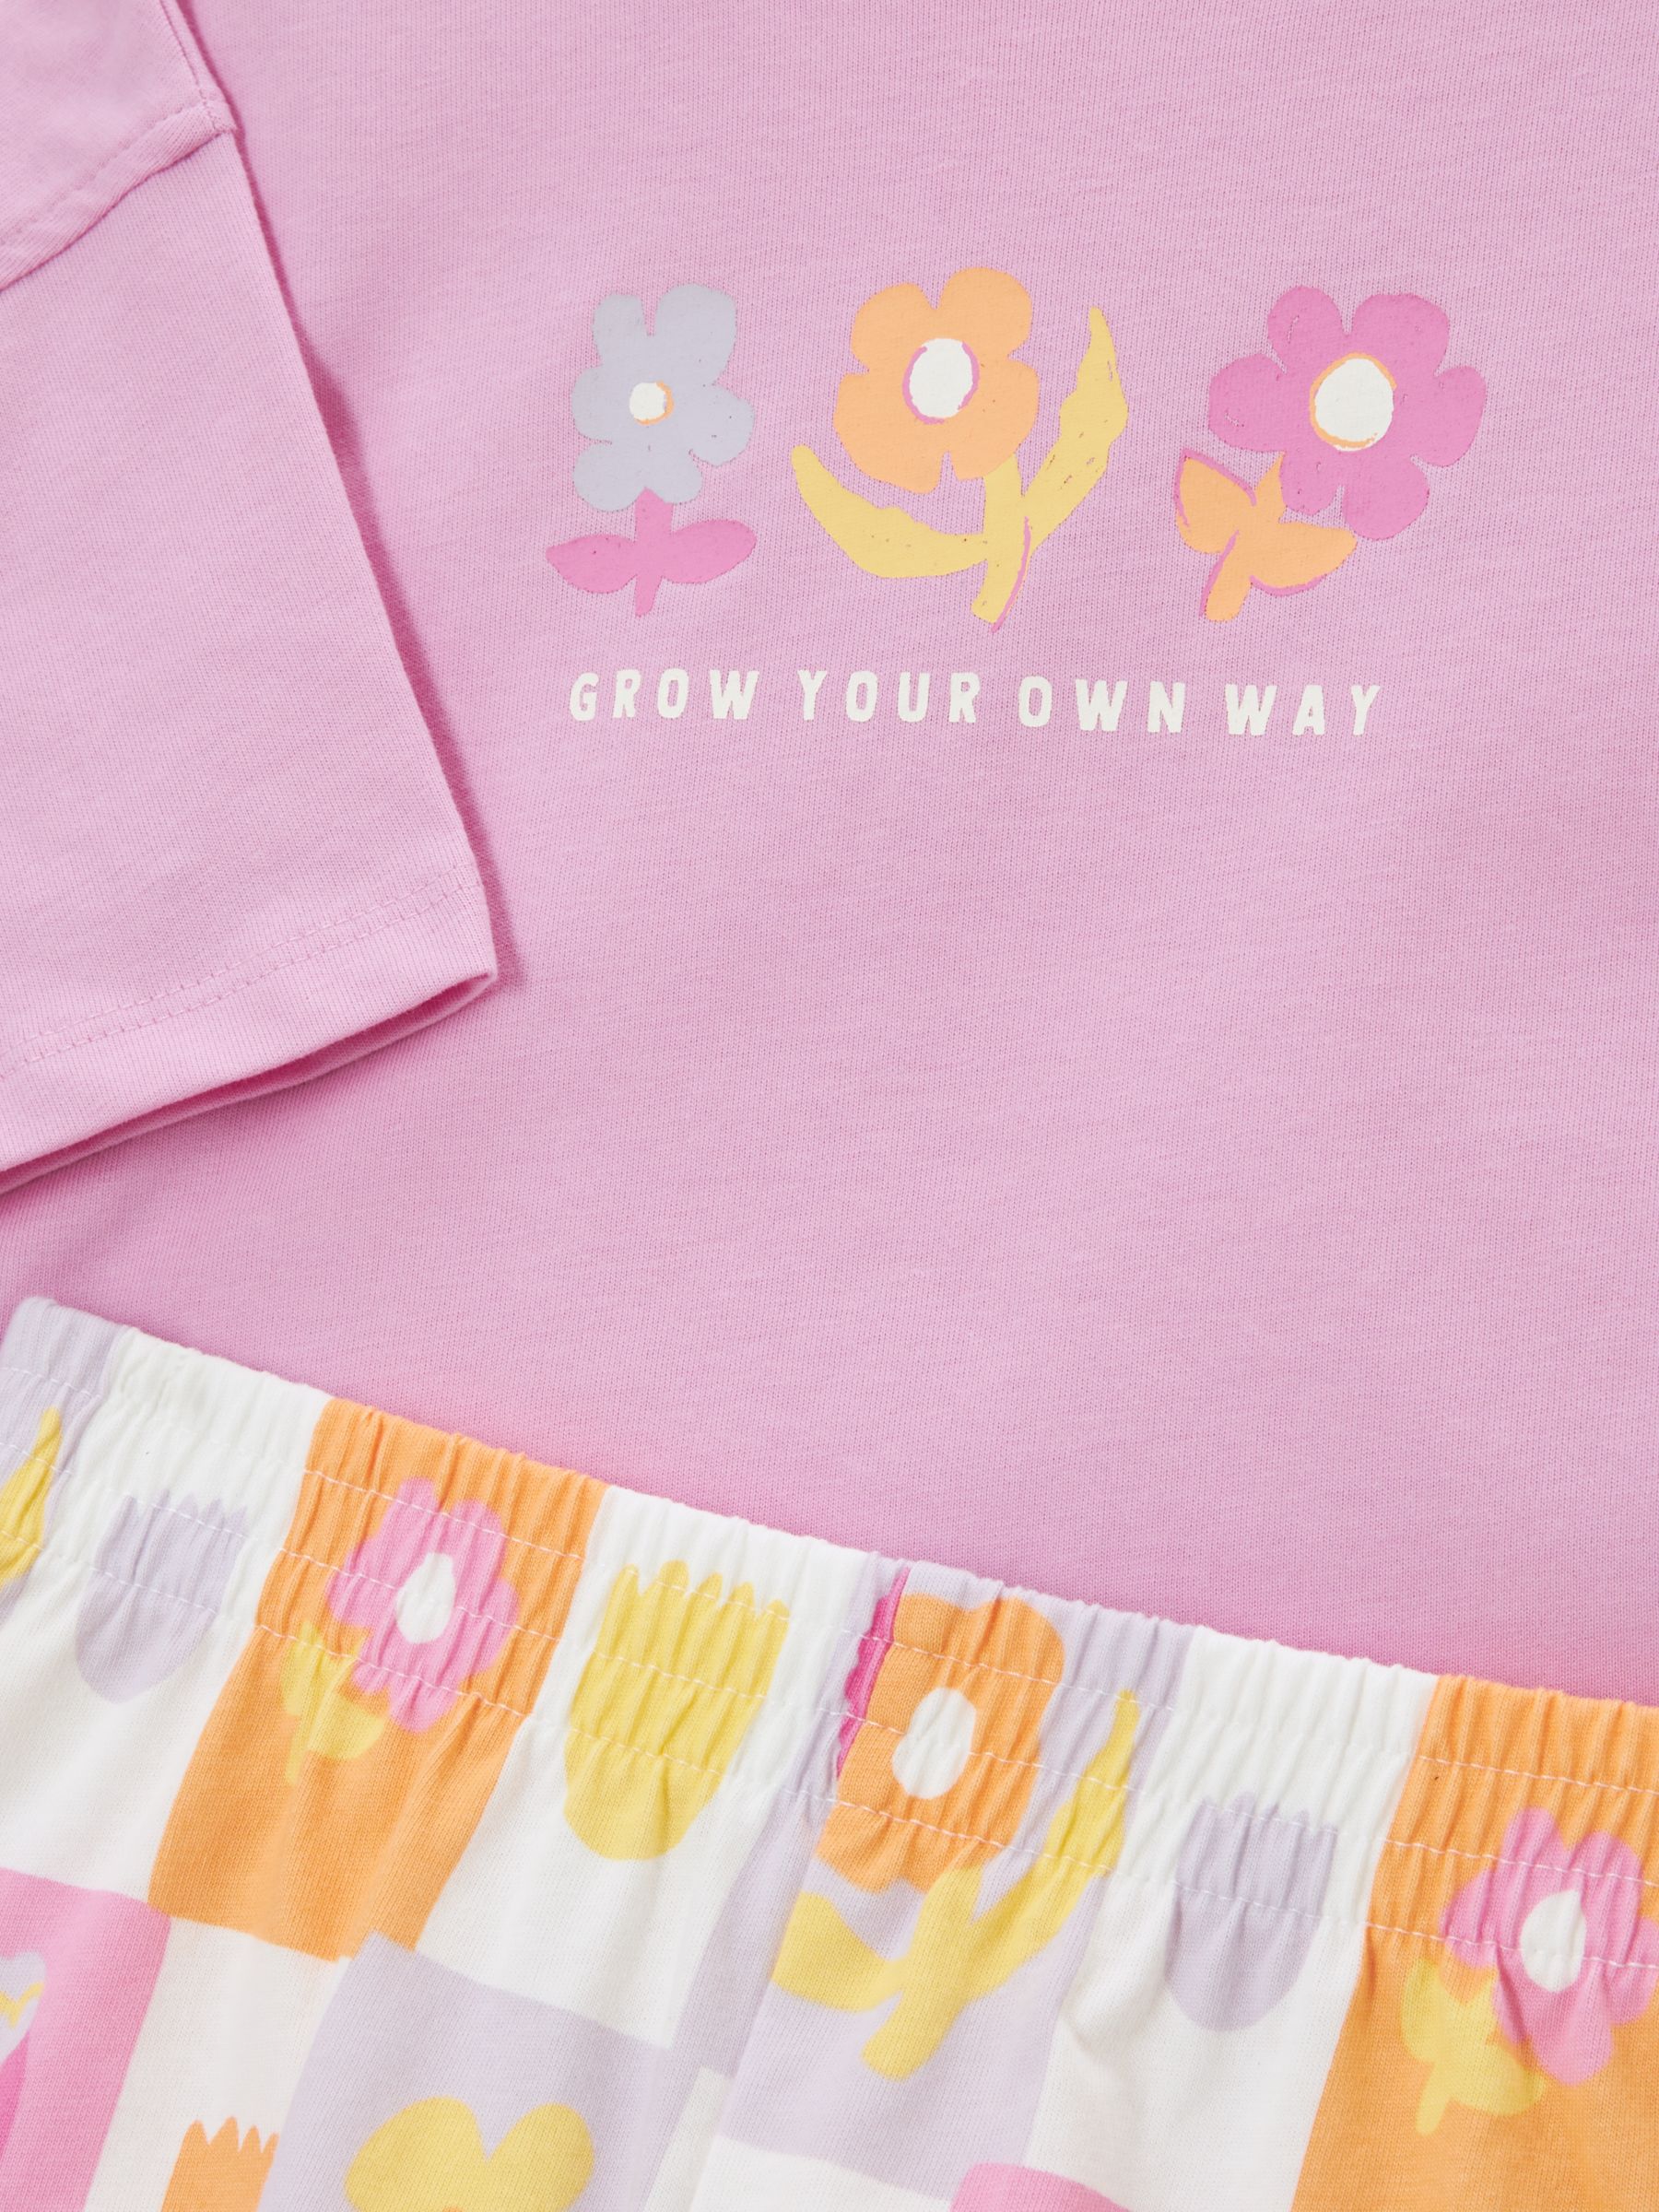 John Lewis ANYDAY Kids' Flower Short Pyjamas, Pink/Multi, 7 years